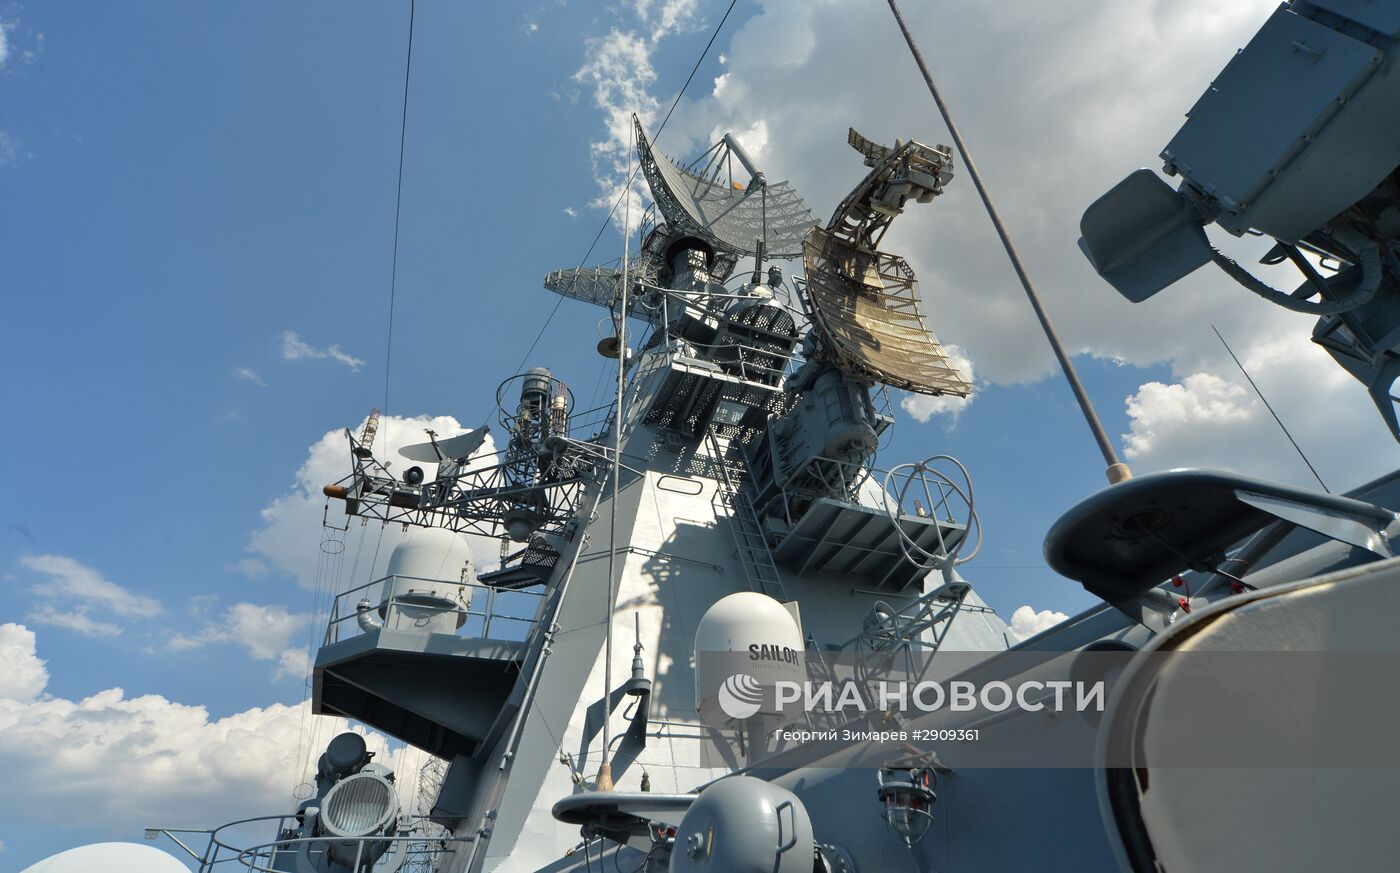 Гвардейский ракетный крейсер "Москва" Черноморского Флота РФ